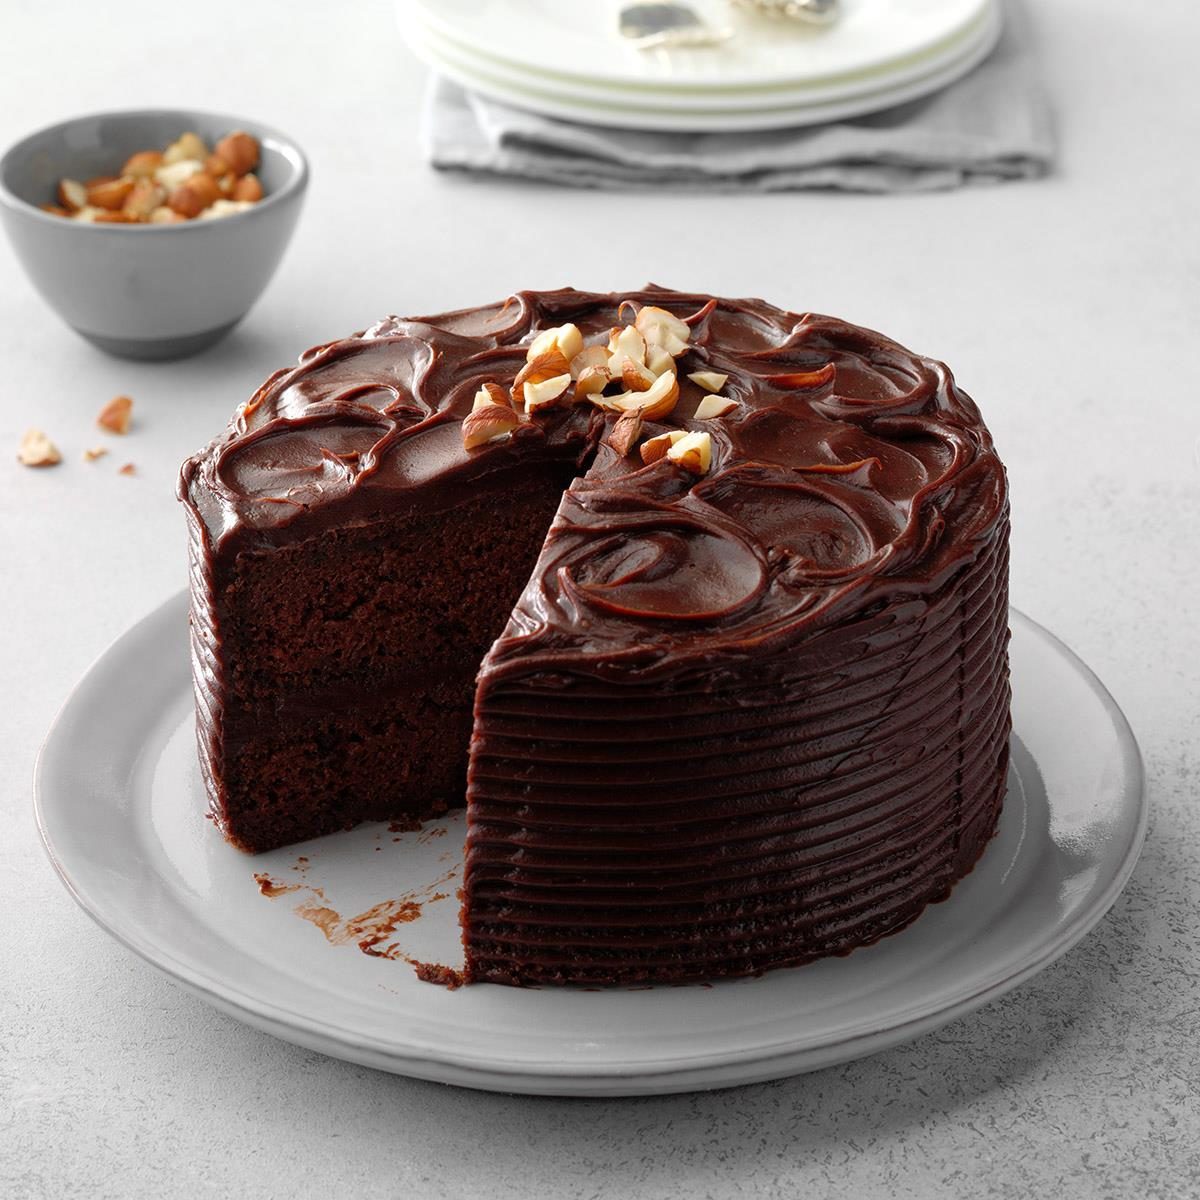 巧克力榛子蛋糕expps Hbmz18 40859 E07 12 5b 15